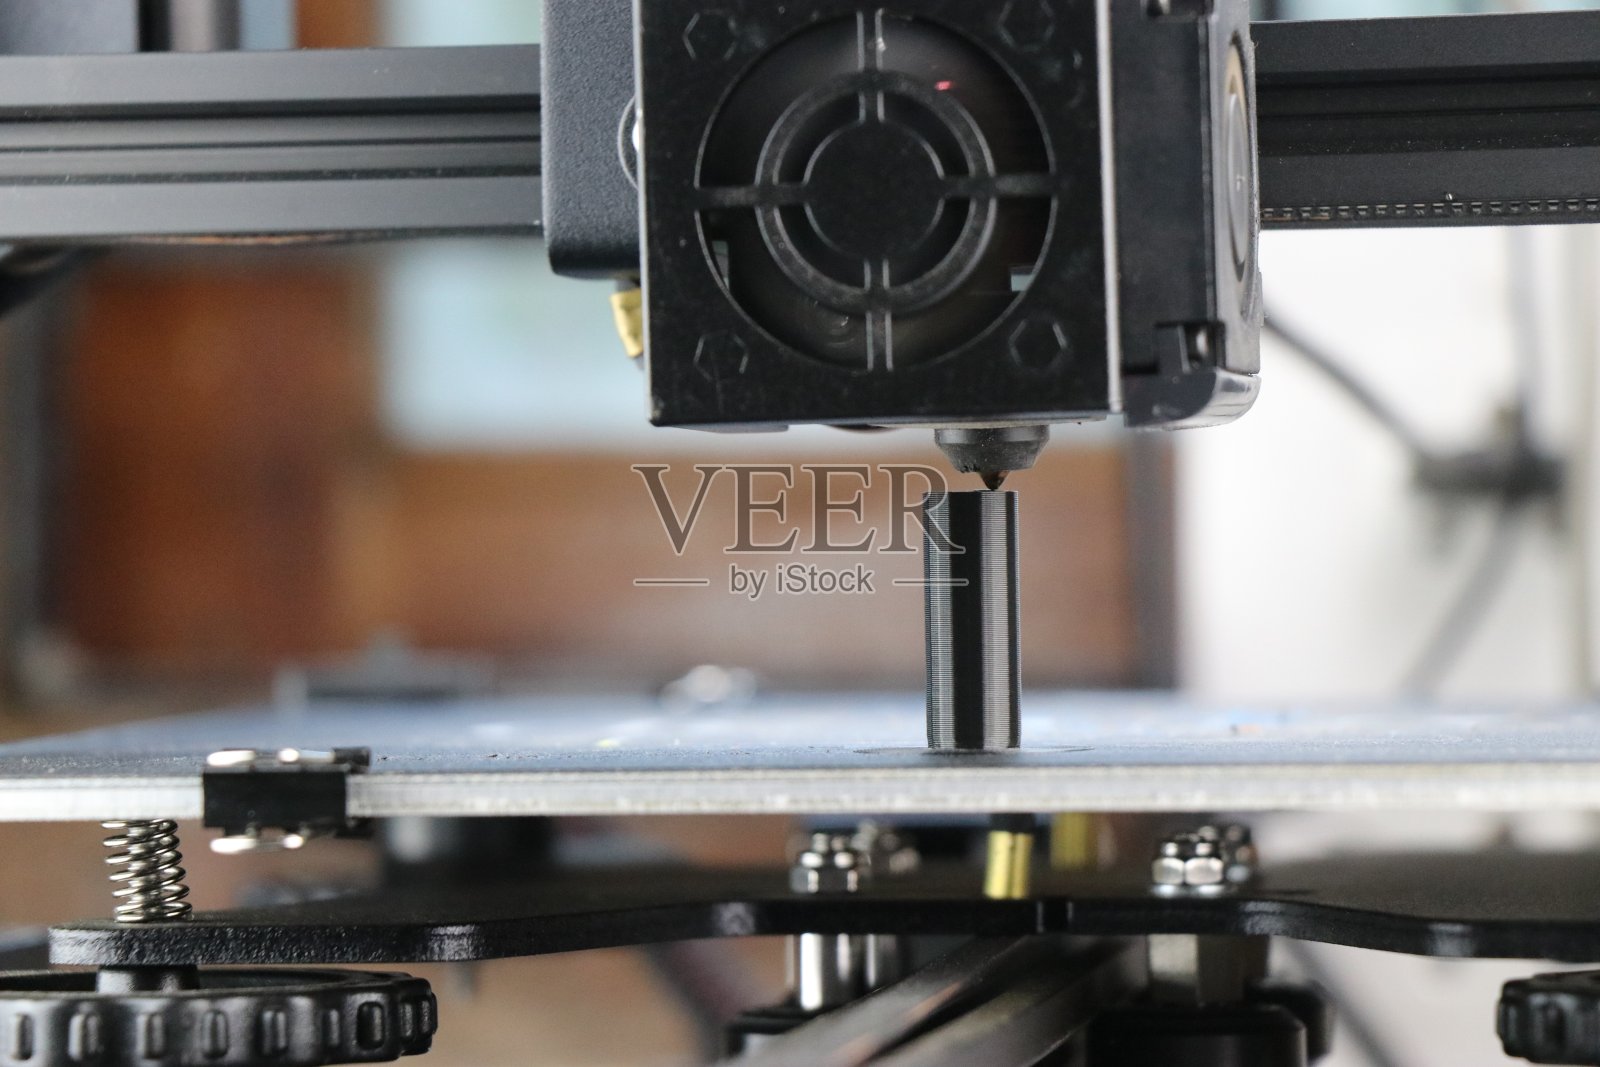 现代3D打印机使用机器人自动化技术进行产品创建或增材制造。运行中的打印机头照片摄影图片